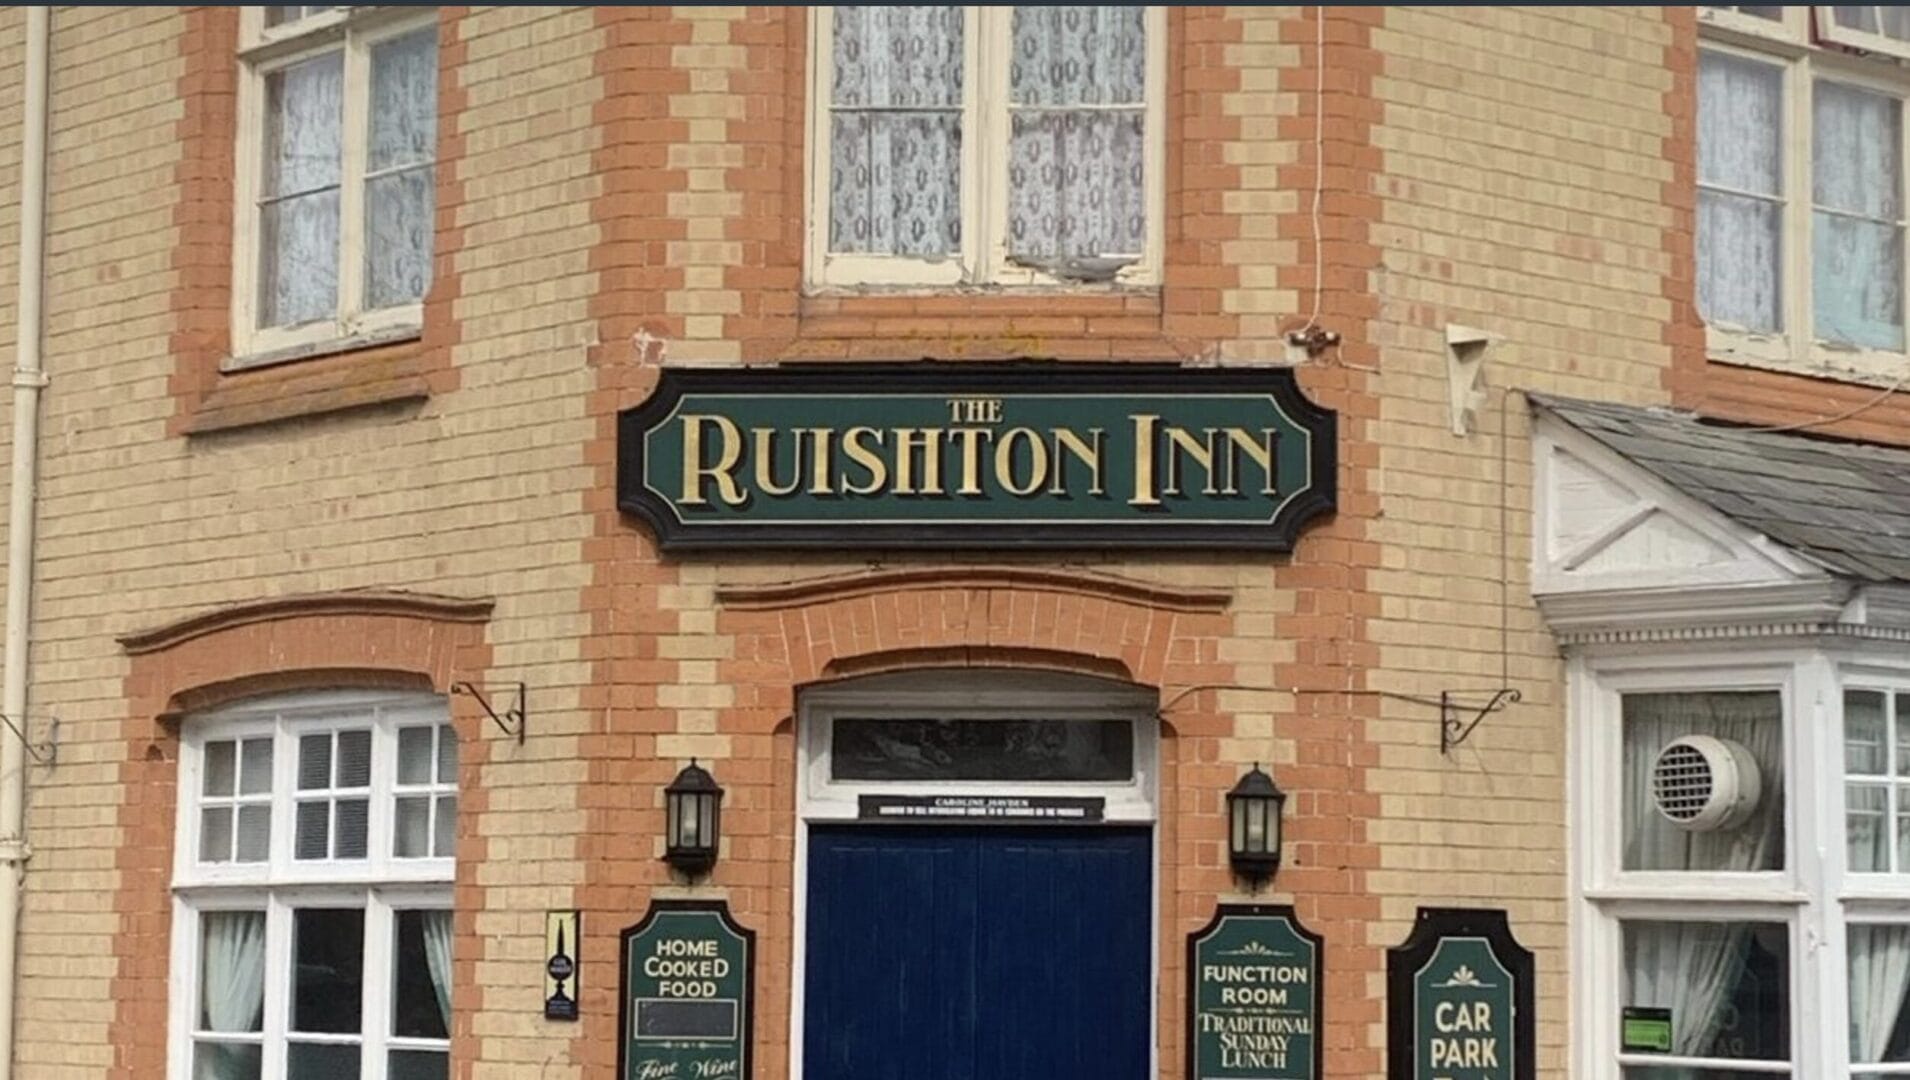 The Ruishton Inn